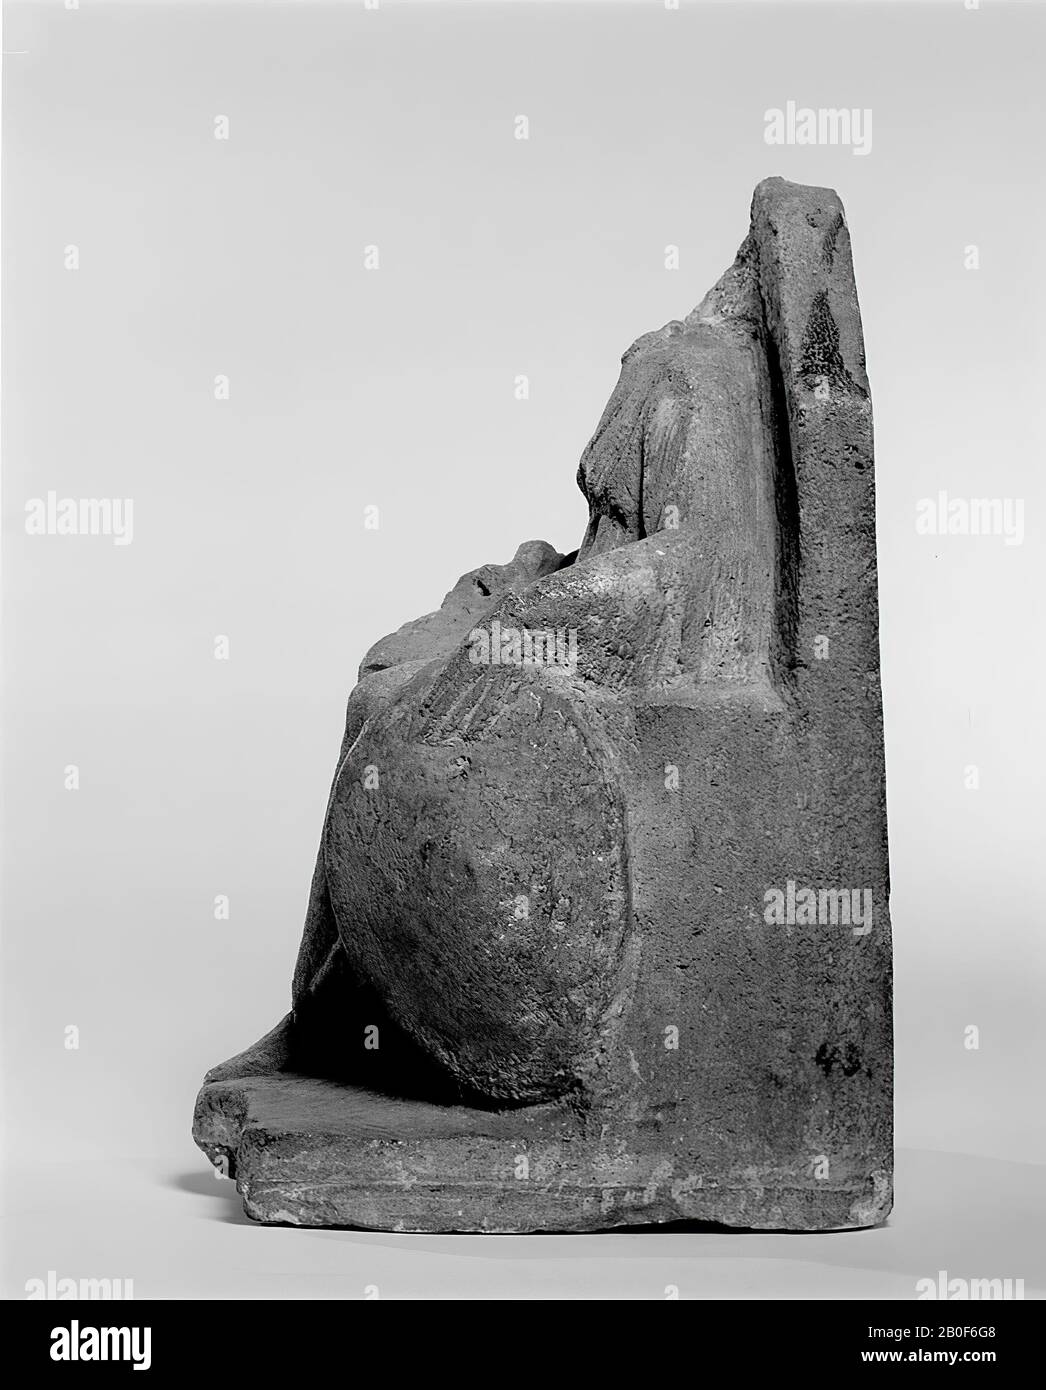 Estatuilla sentada (piedra caliza), probablemente Minerva, la mano  izquierda descansando sobre un escudo, alrededor del brazo derecho, donde  falta la mano, una serpiente se chupa. Falta la cabeza de la estatua, la